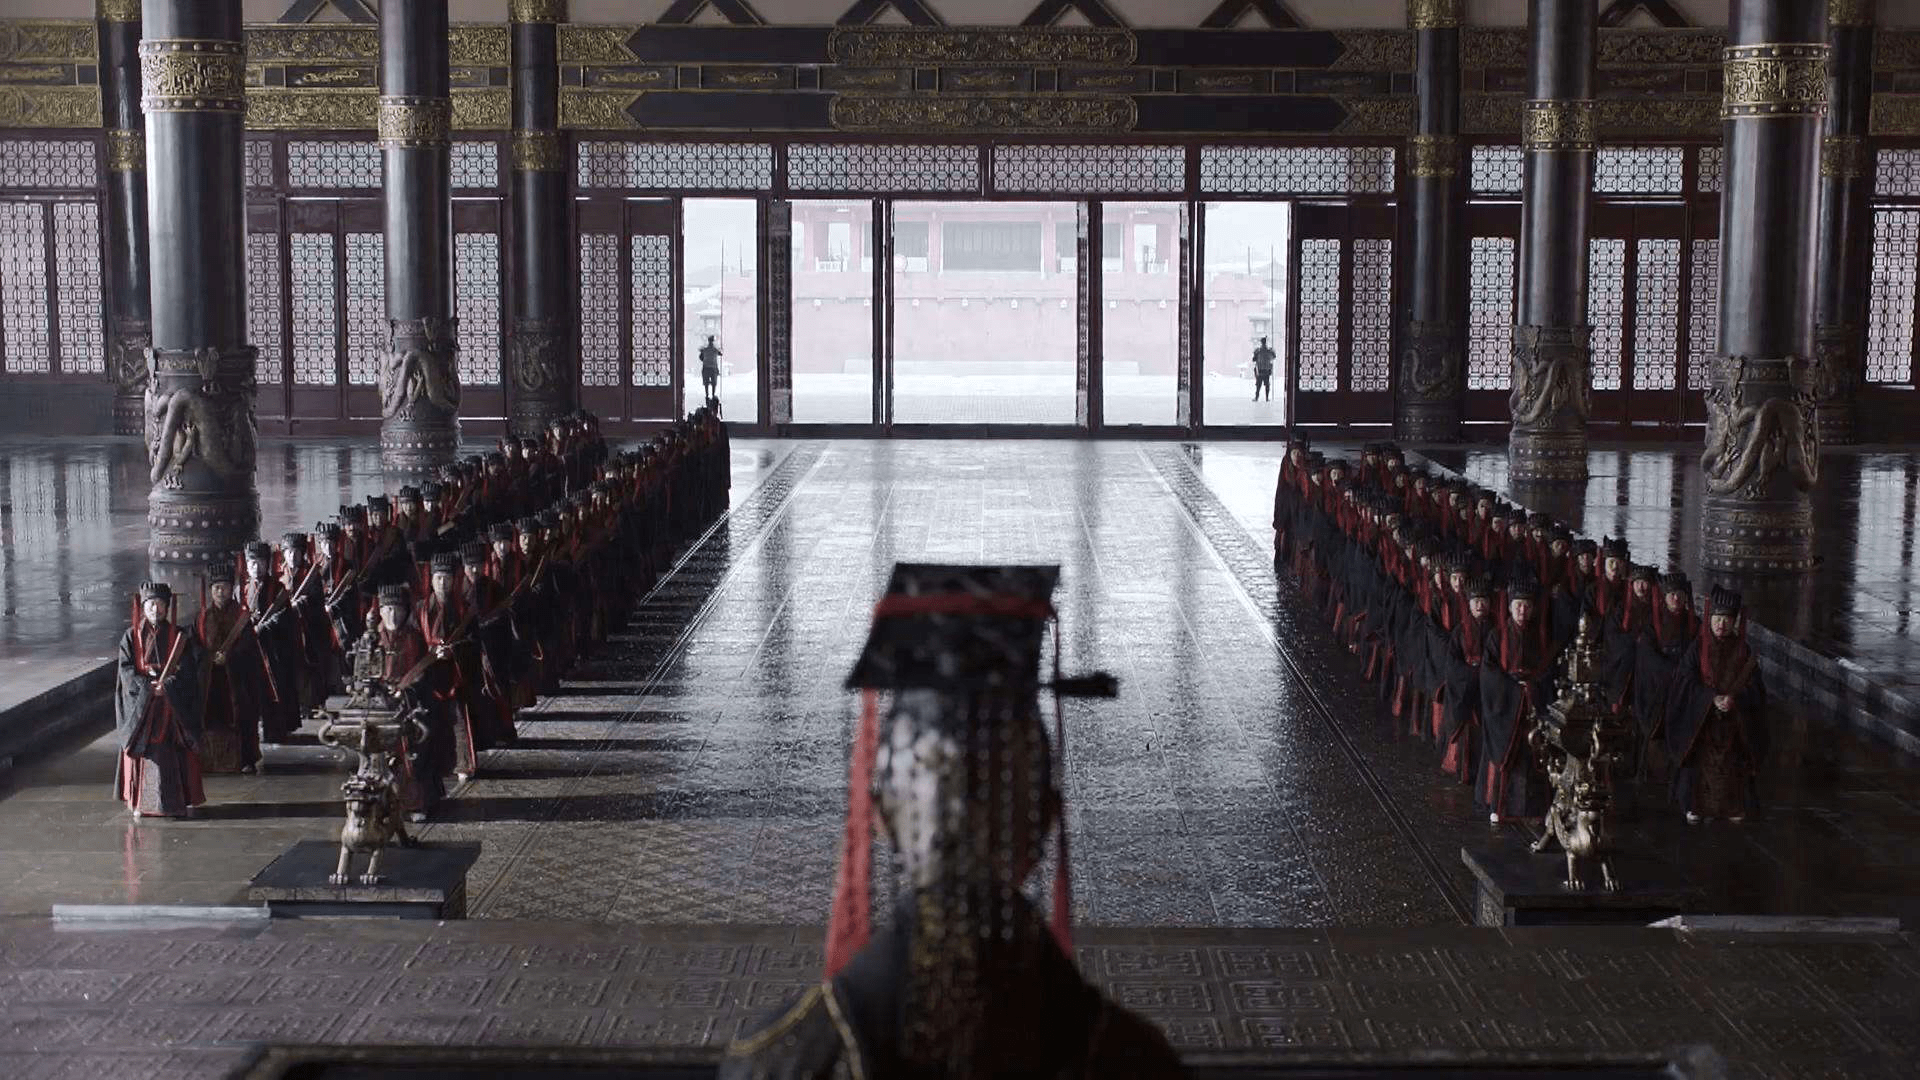 秦国宫殿内景图片